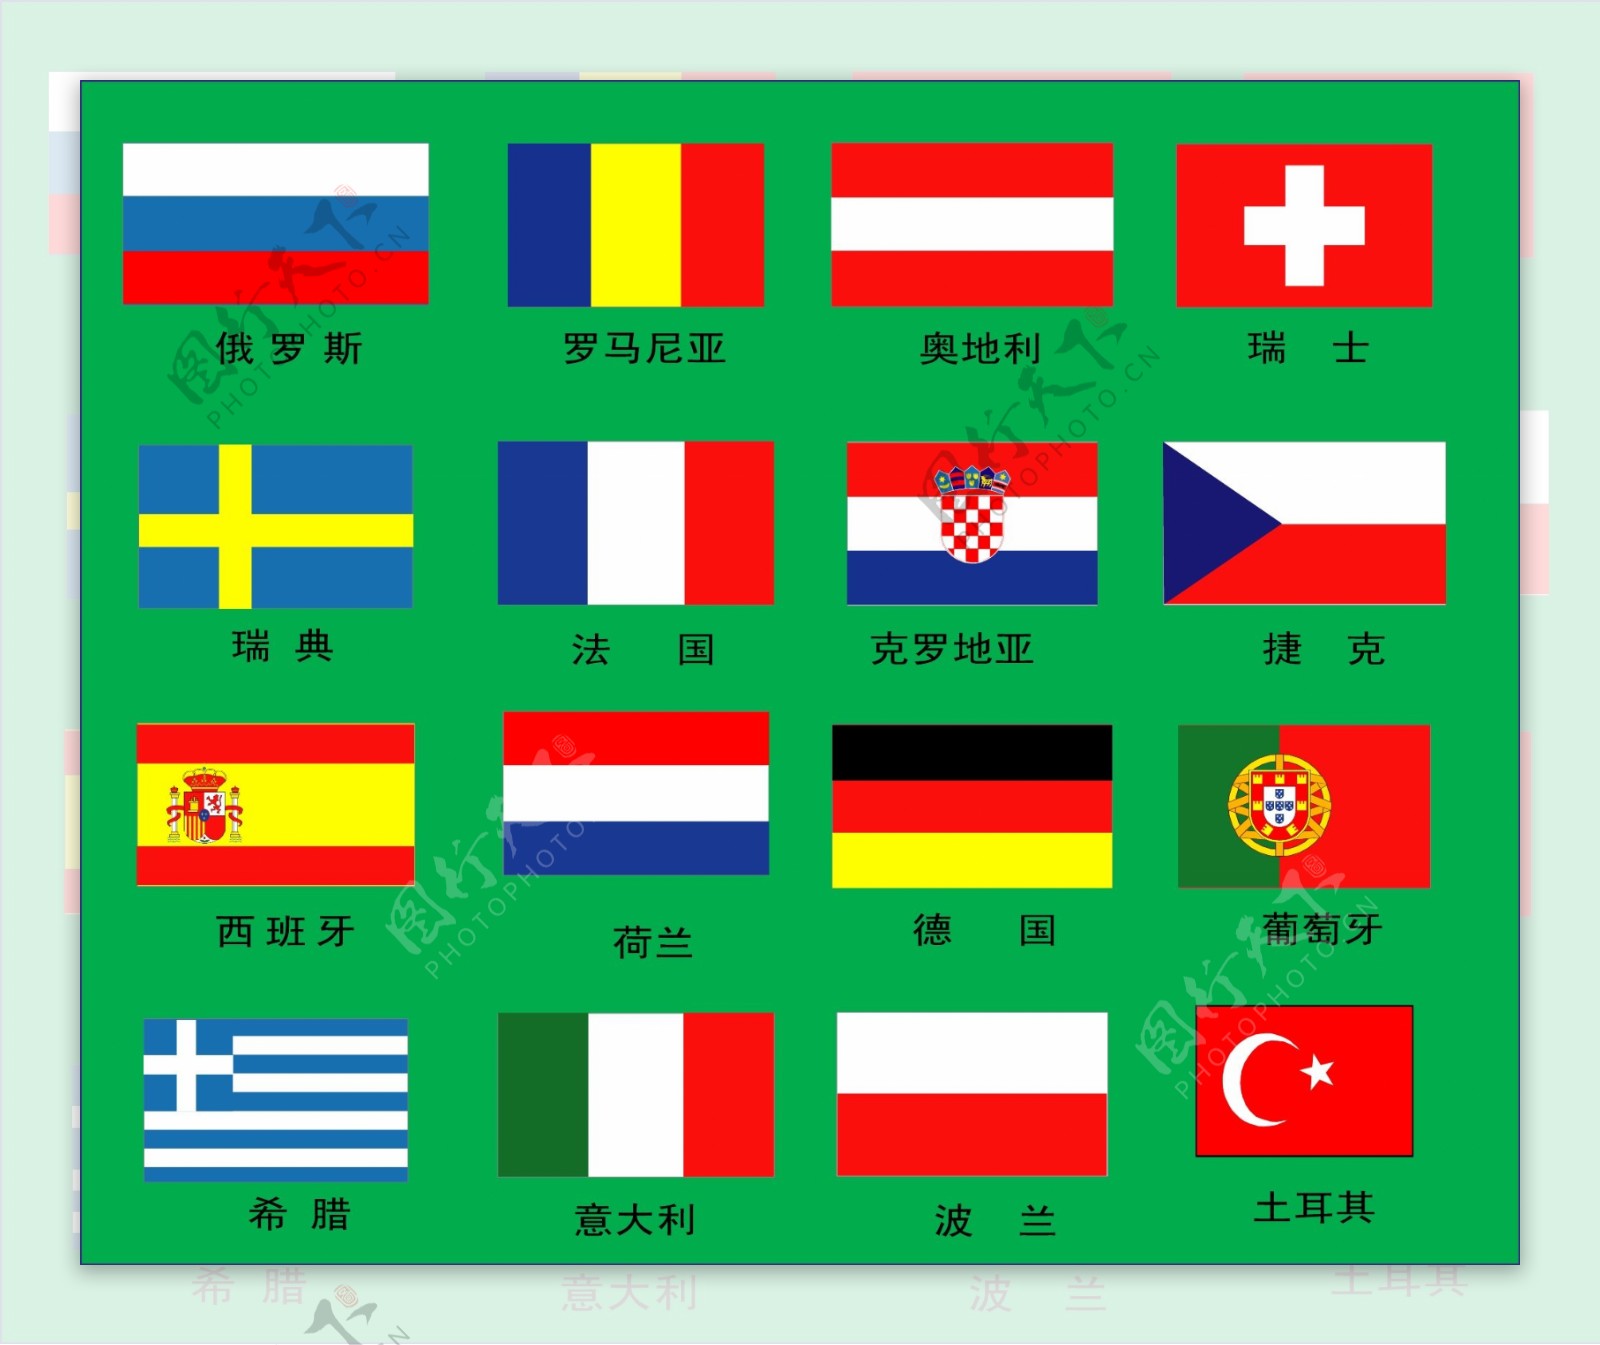 2008年欧洲杯参赛国国旗图片